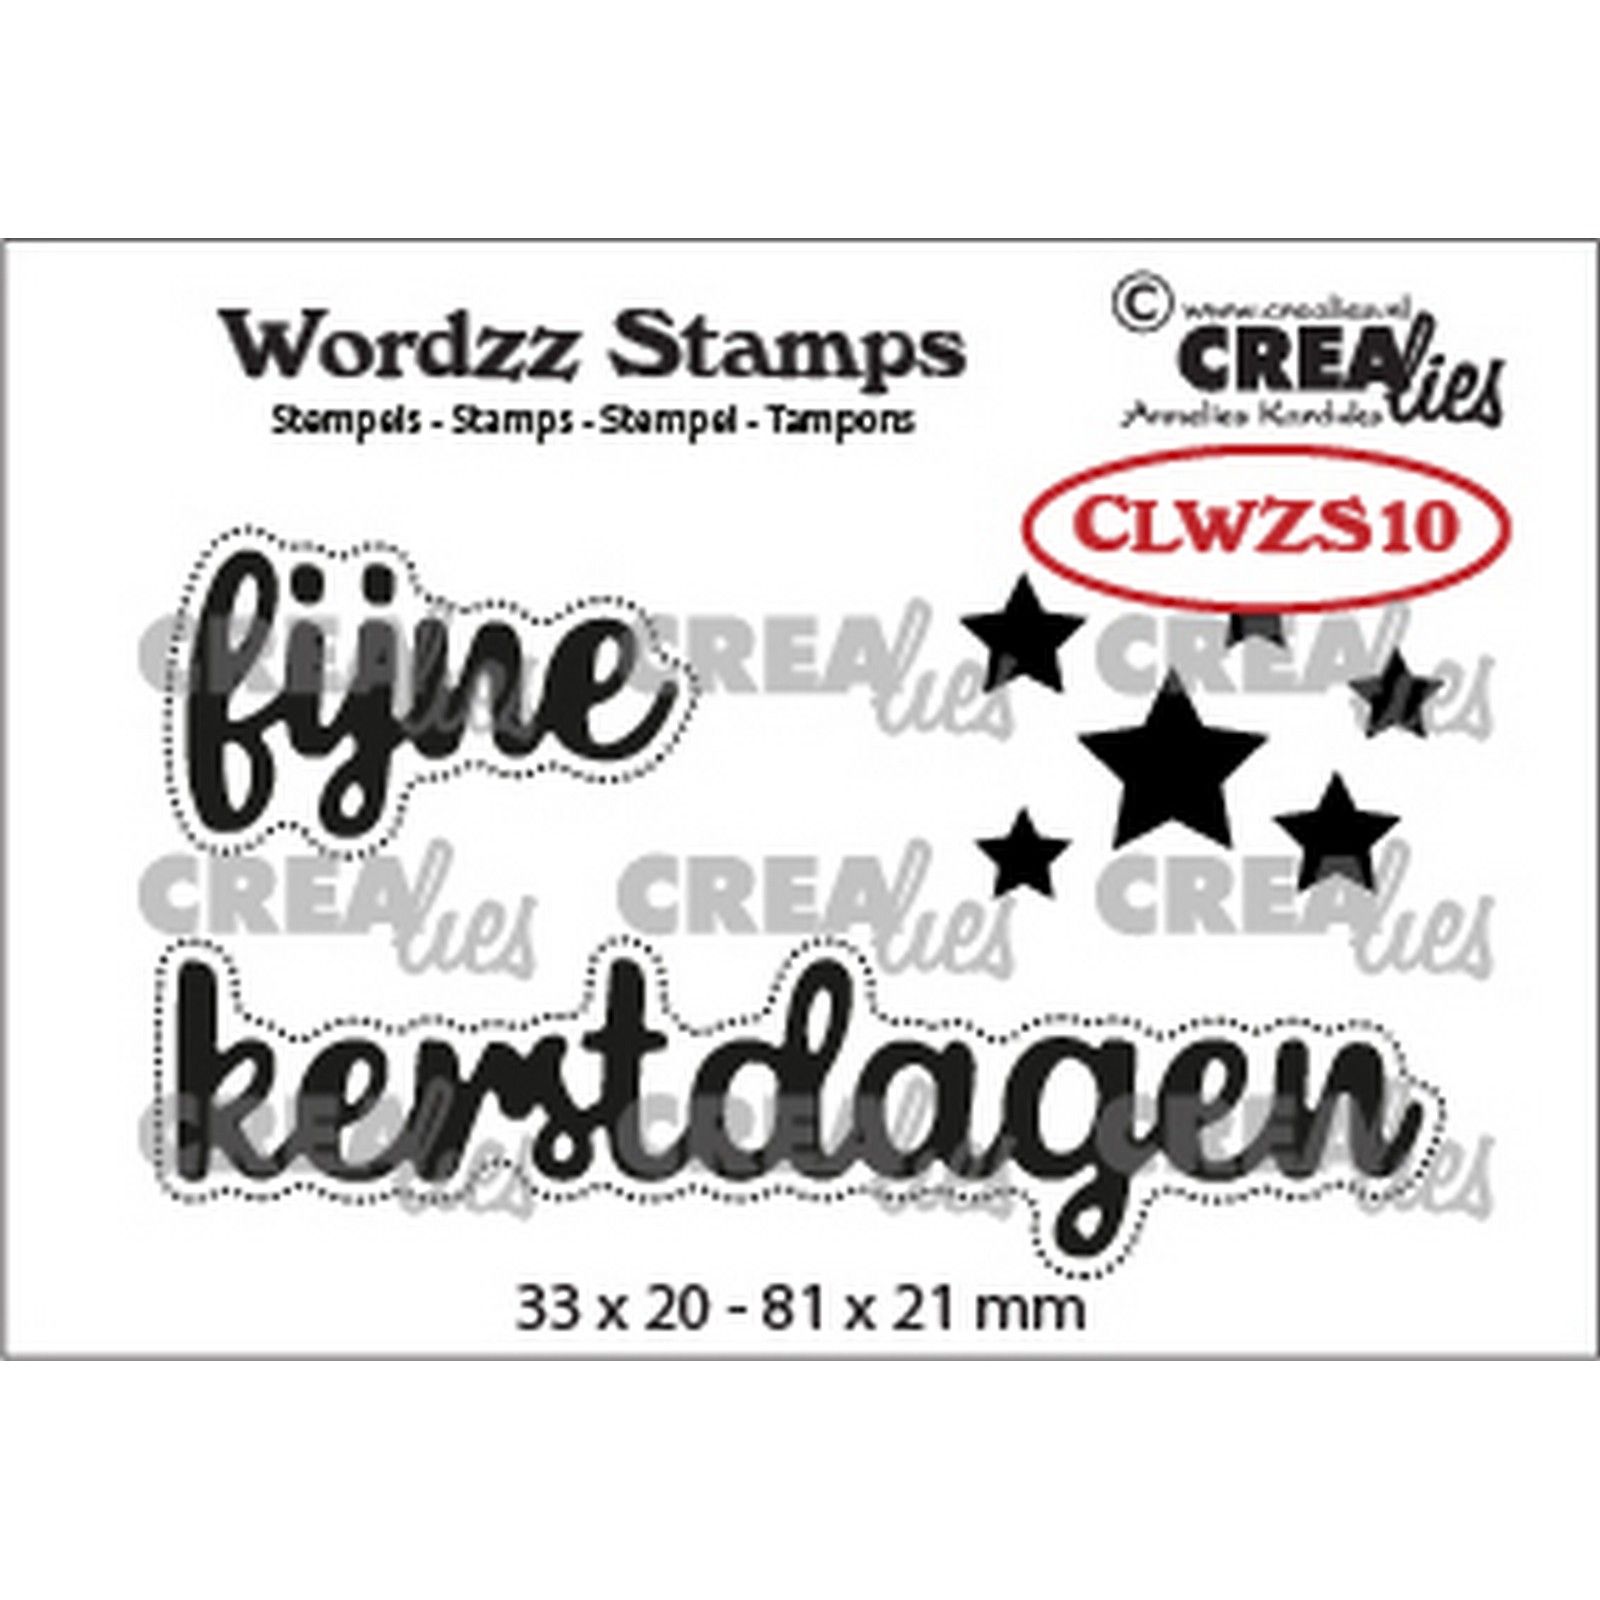 Crealies • Wordzz stamps Fijne kerstdagen